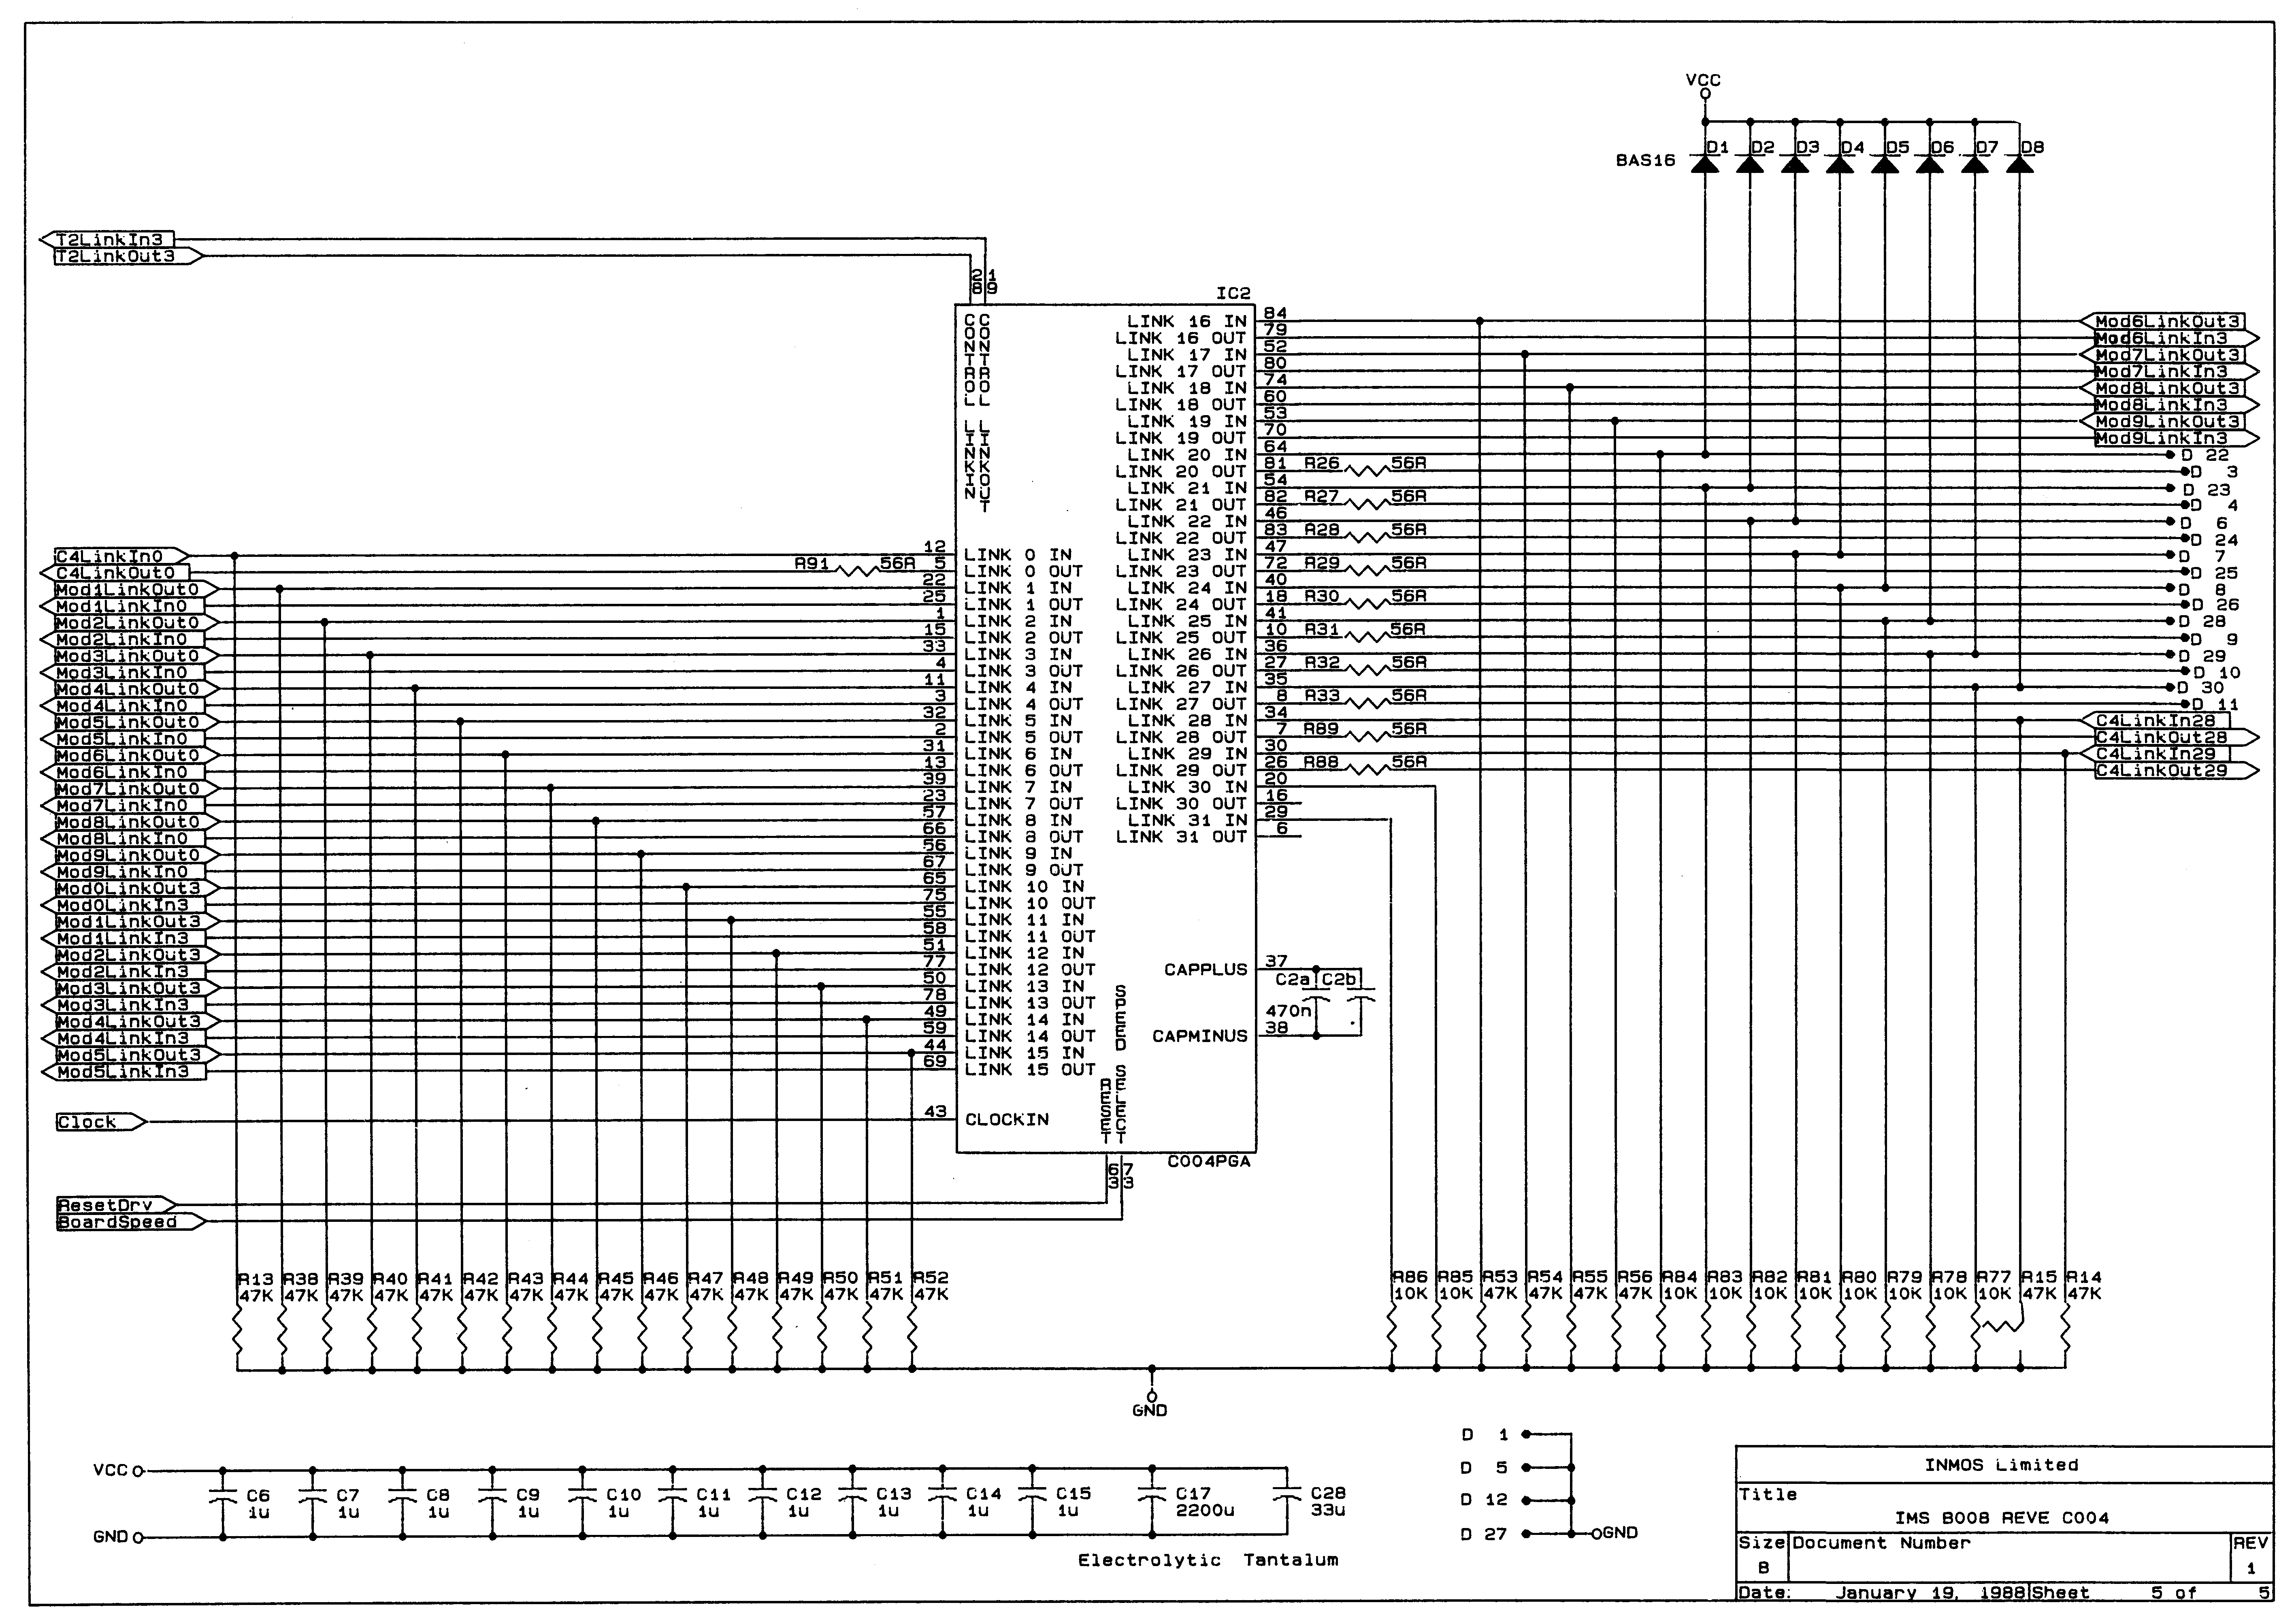 Circuit Diagram 5 of 5